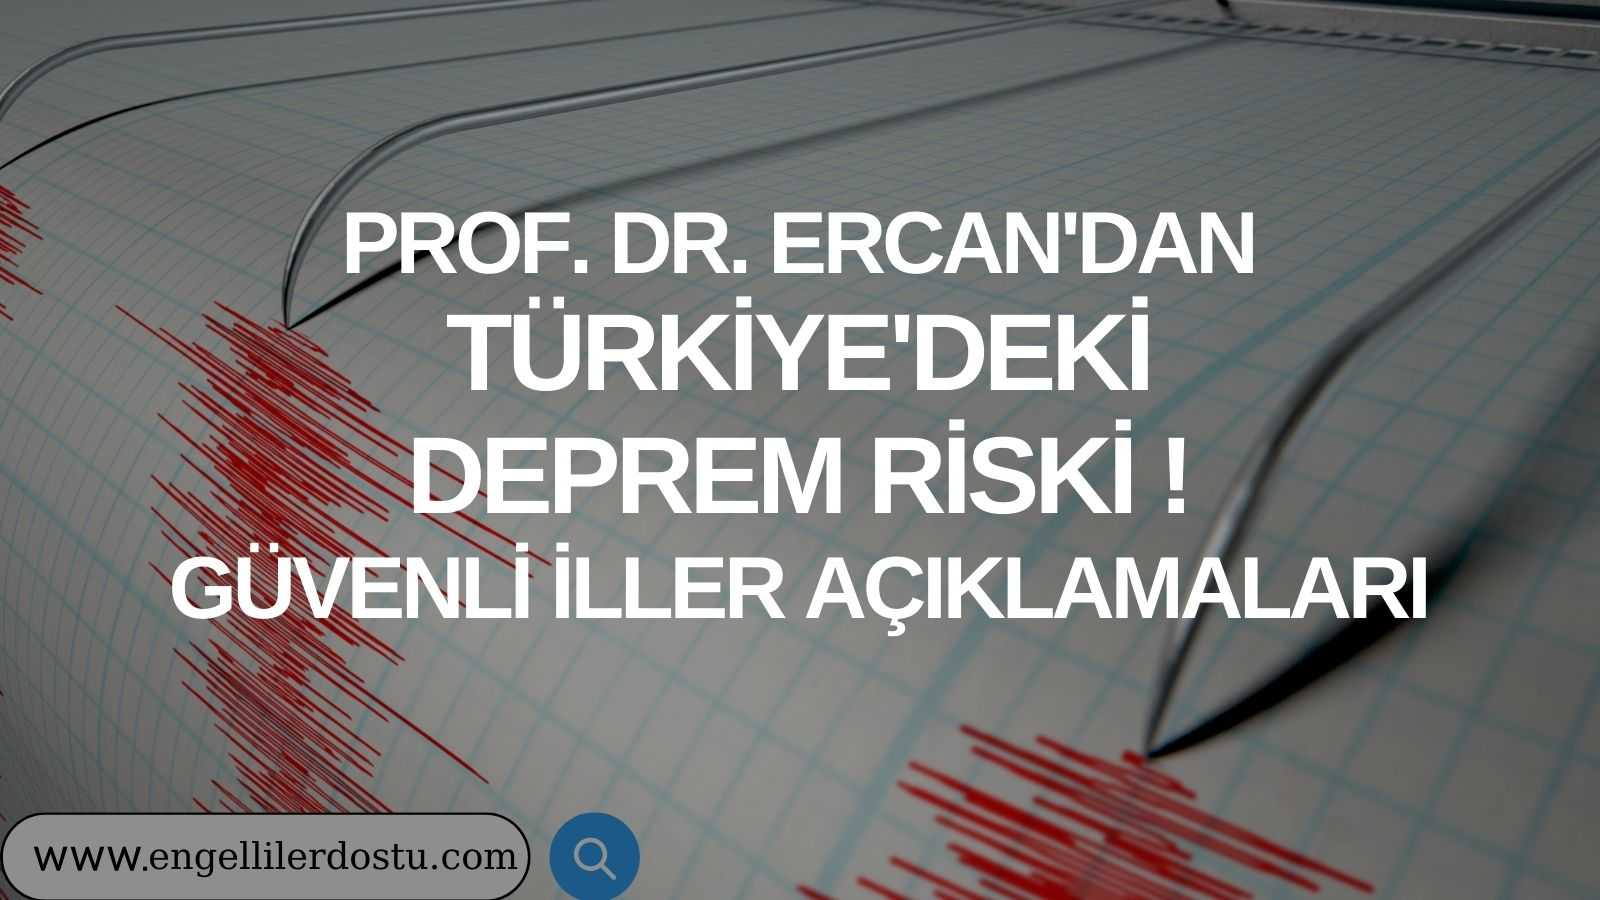 Prof. Dr. Ercan'dan Türkiye'deki Deprem Riski ve Güvenli İller Açıklamaları